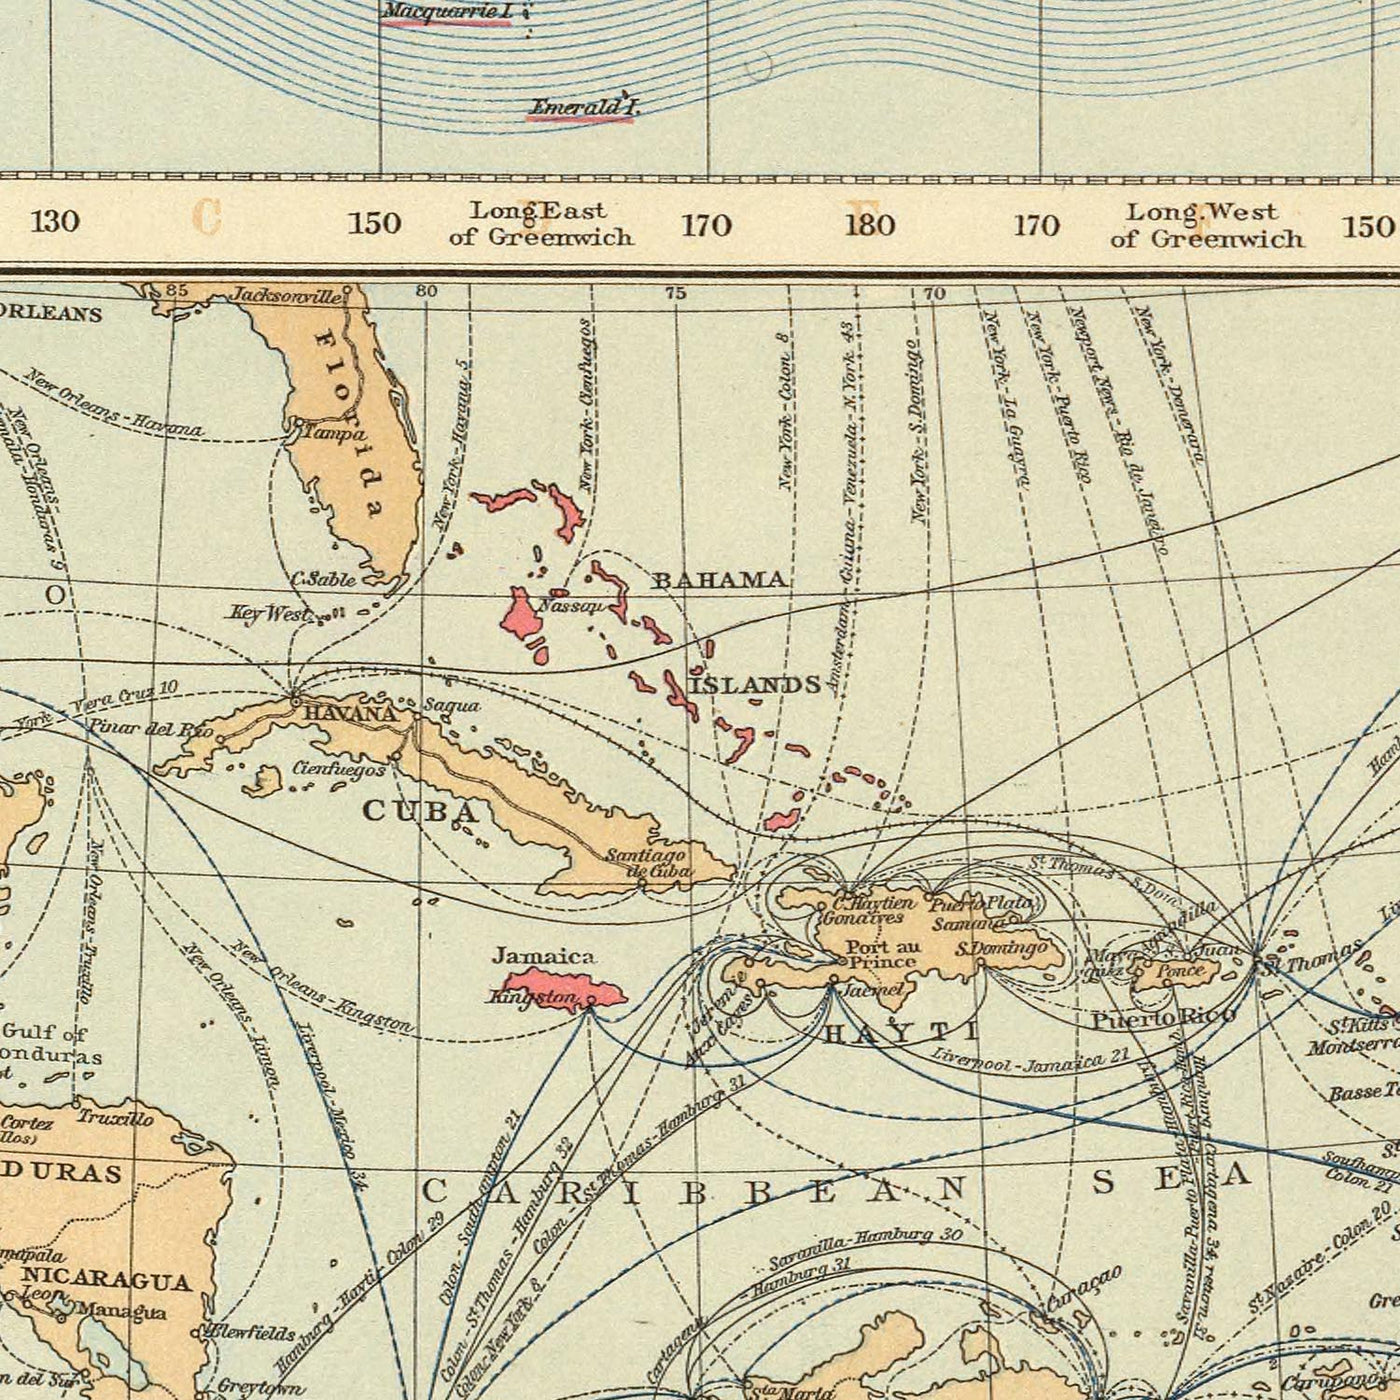 Carte du vieux monde des routes commerciales de l'Empire britannique par le Times en 1895 - Les îles britanniques, le Canada, l'Inde, l'Australie, la Nouvelle-Zélande